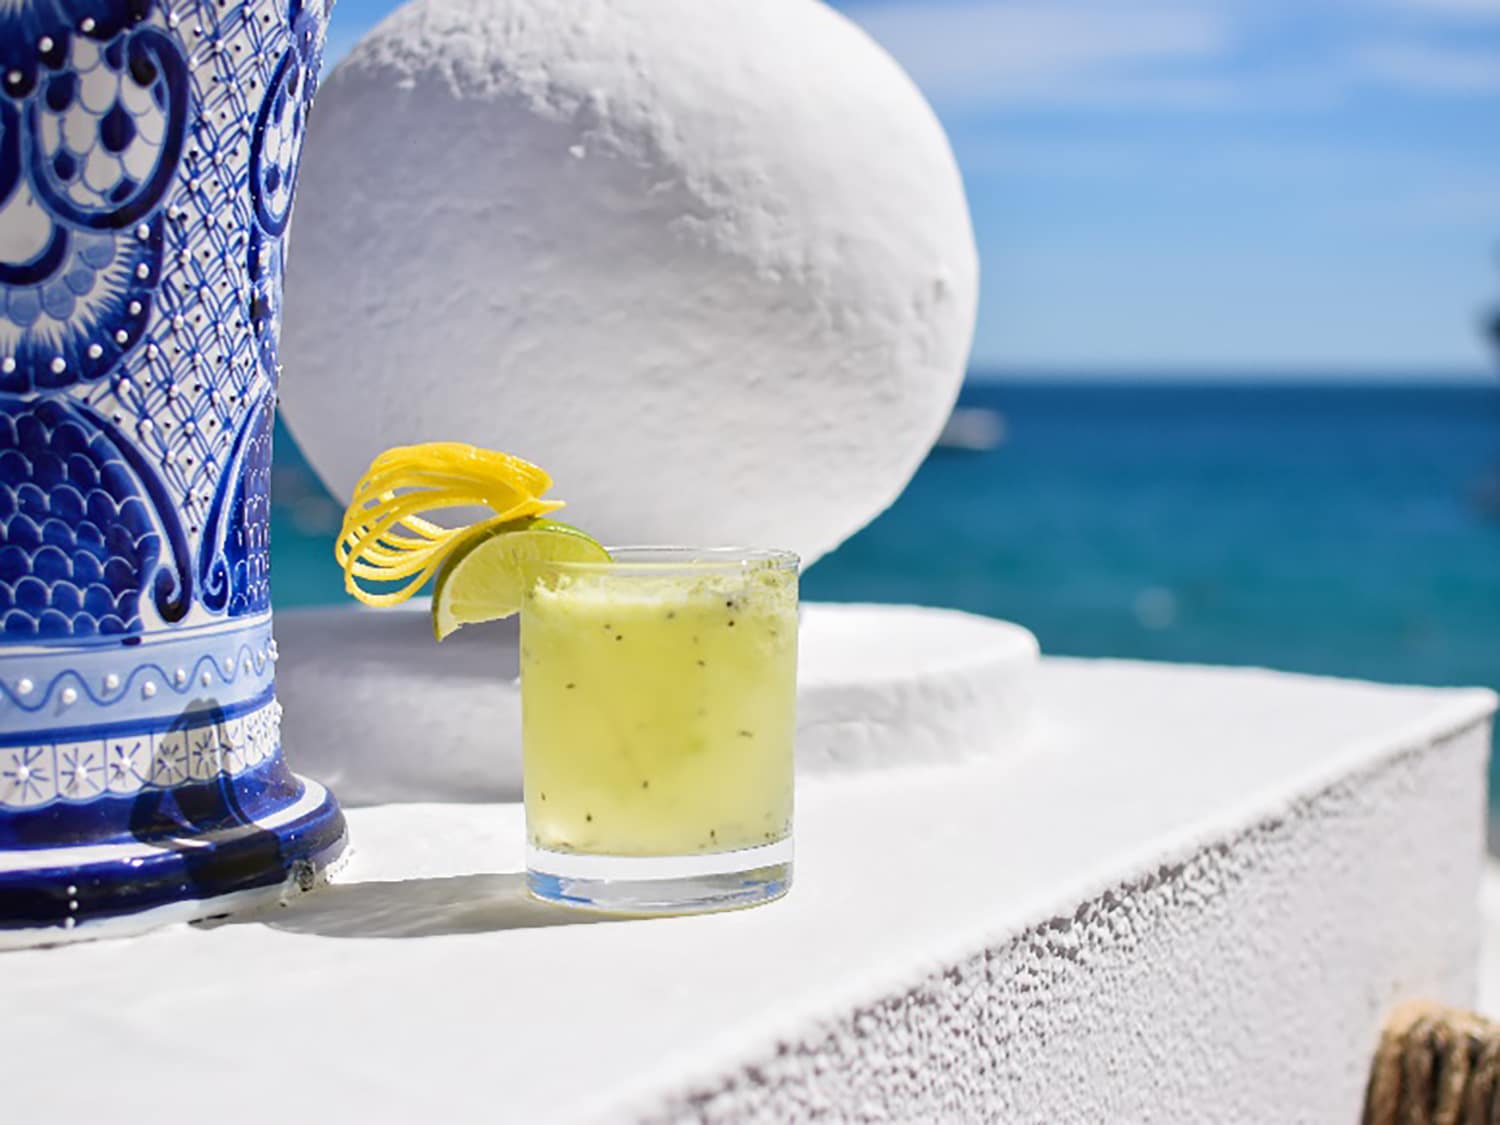 The Emerald Green Margarita from Pueblo Bonito Los Cabos Beach Resort in Mexico.